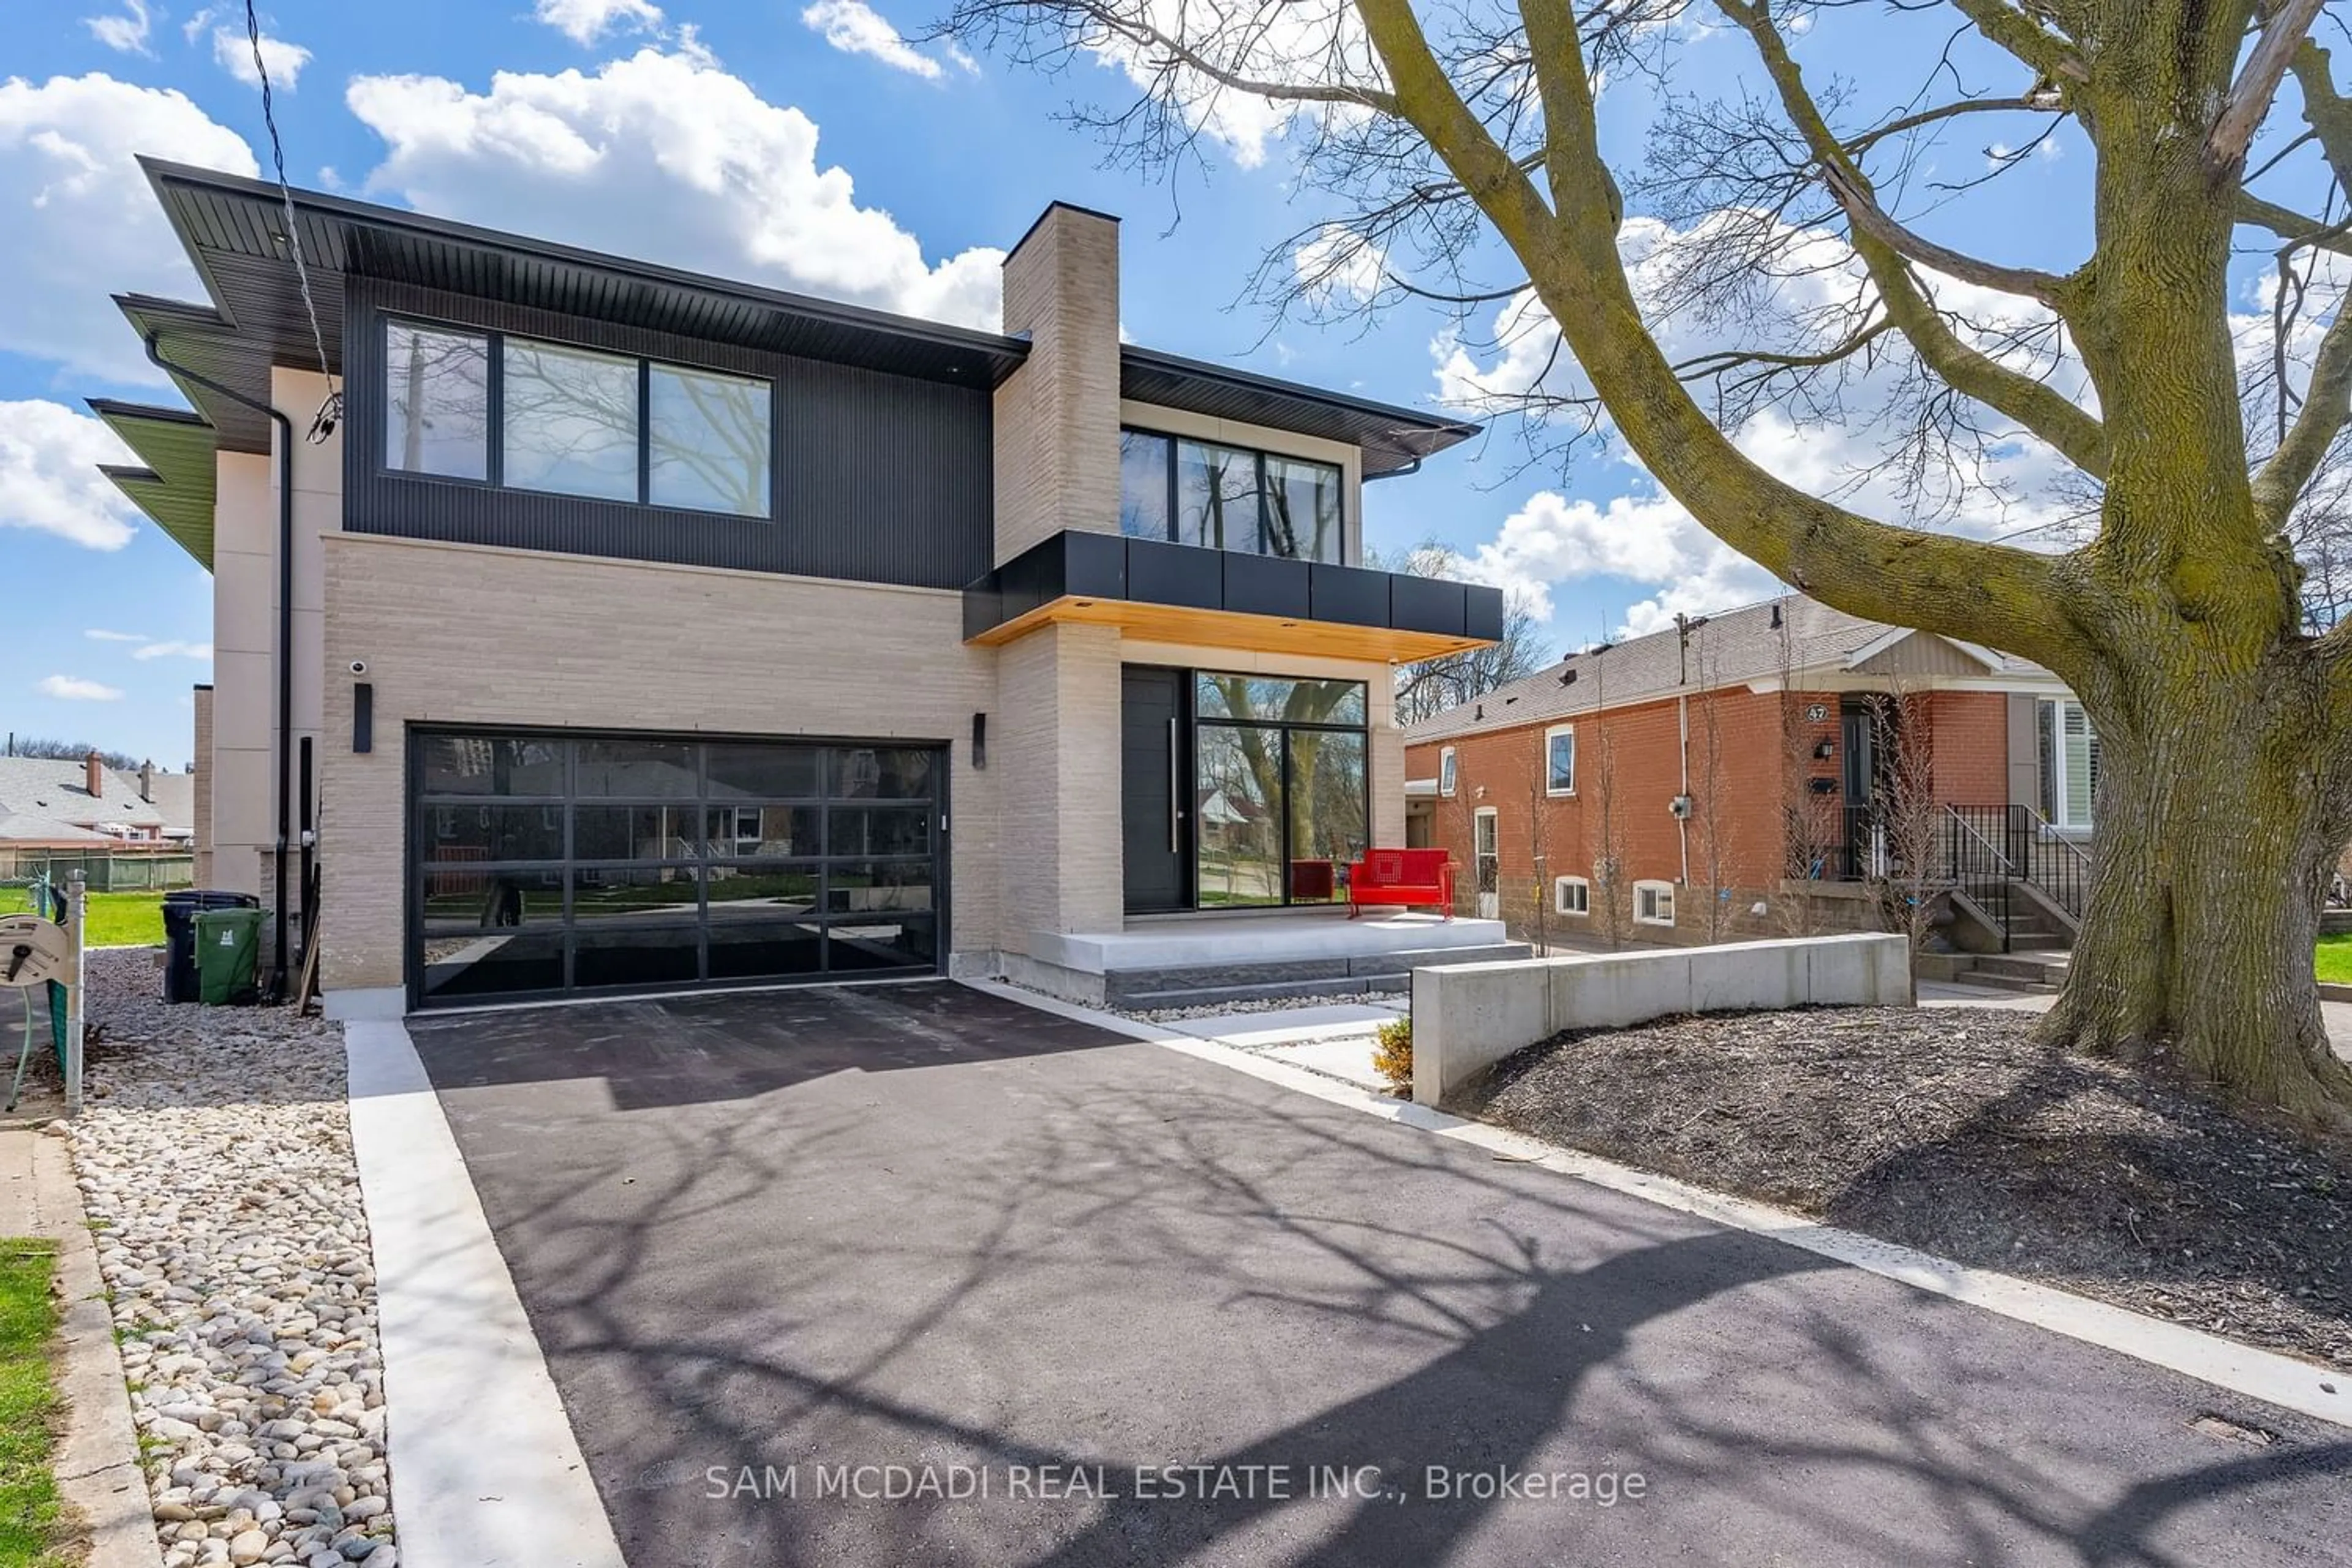 Home with brick exterior material for 45 Savona Dr, Toronto Ontario M8W 4V2